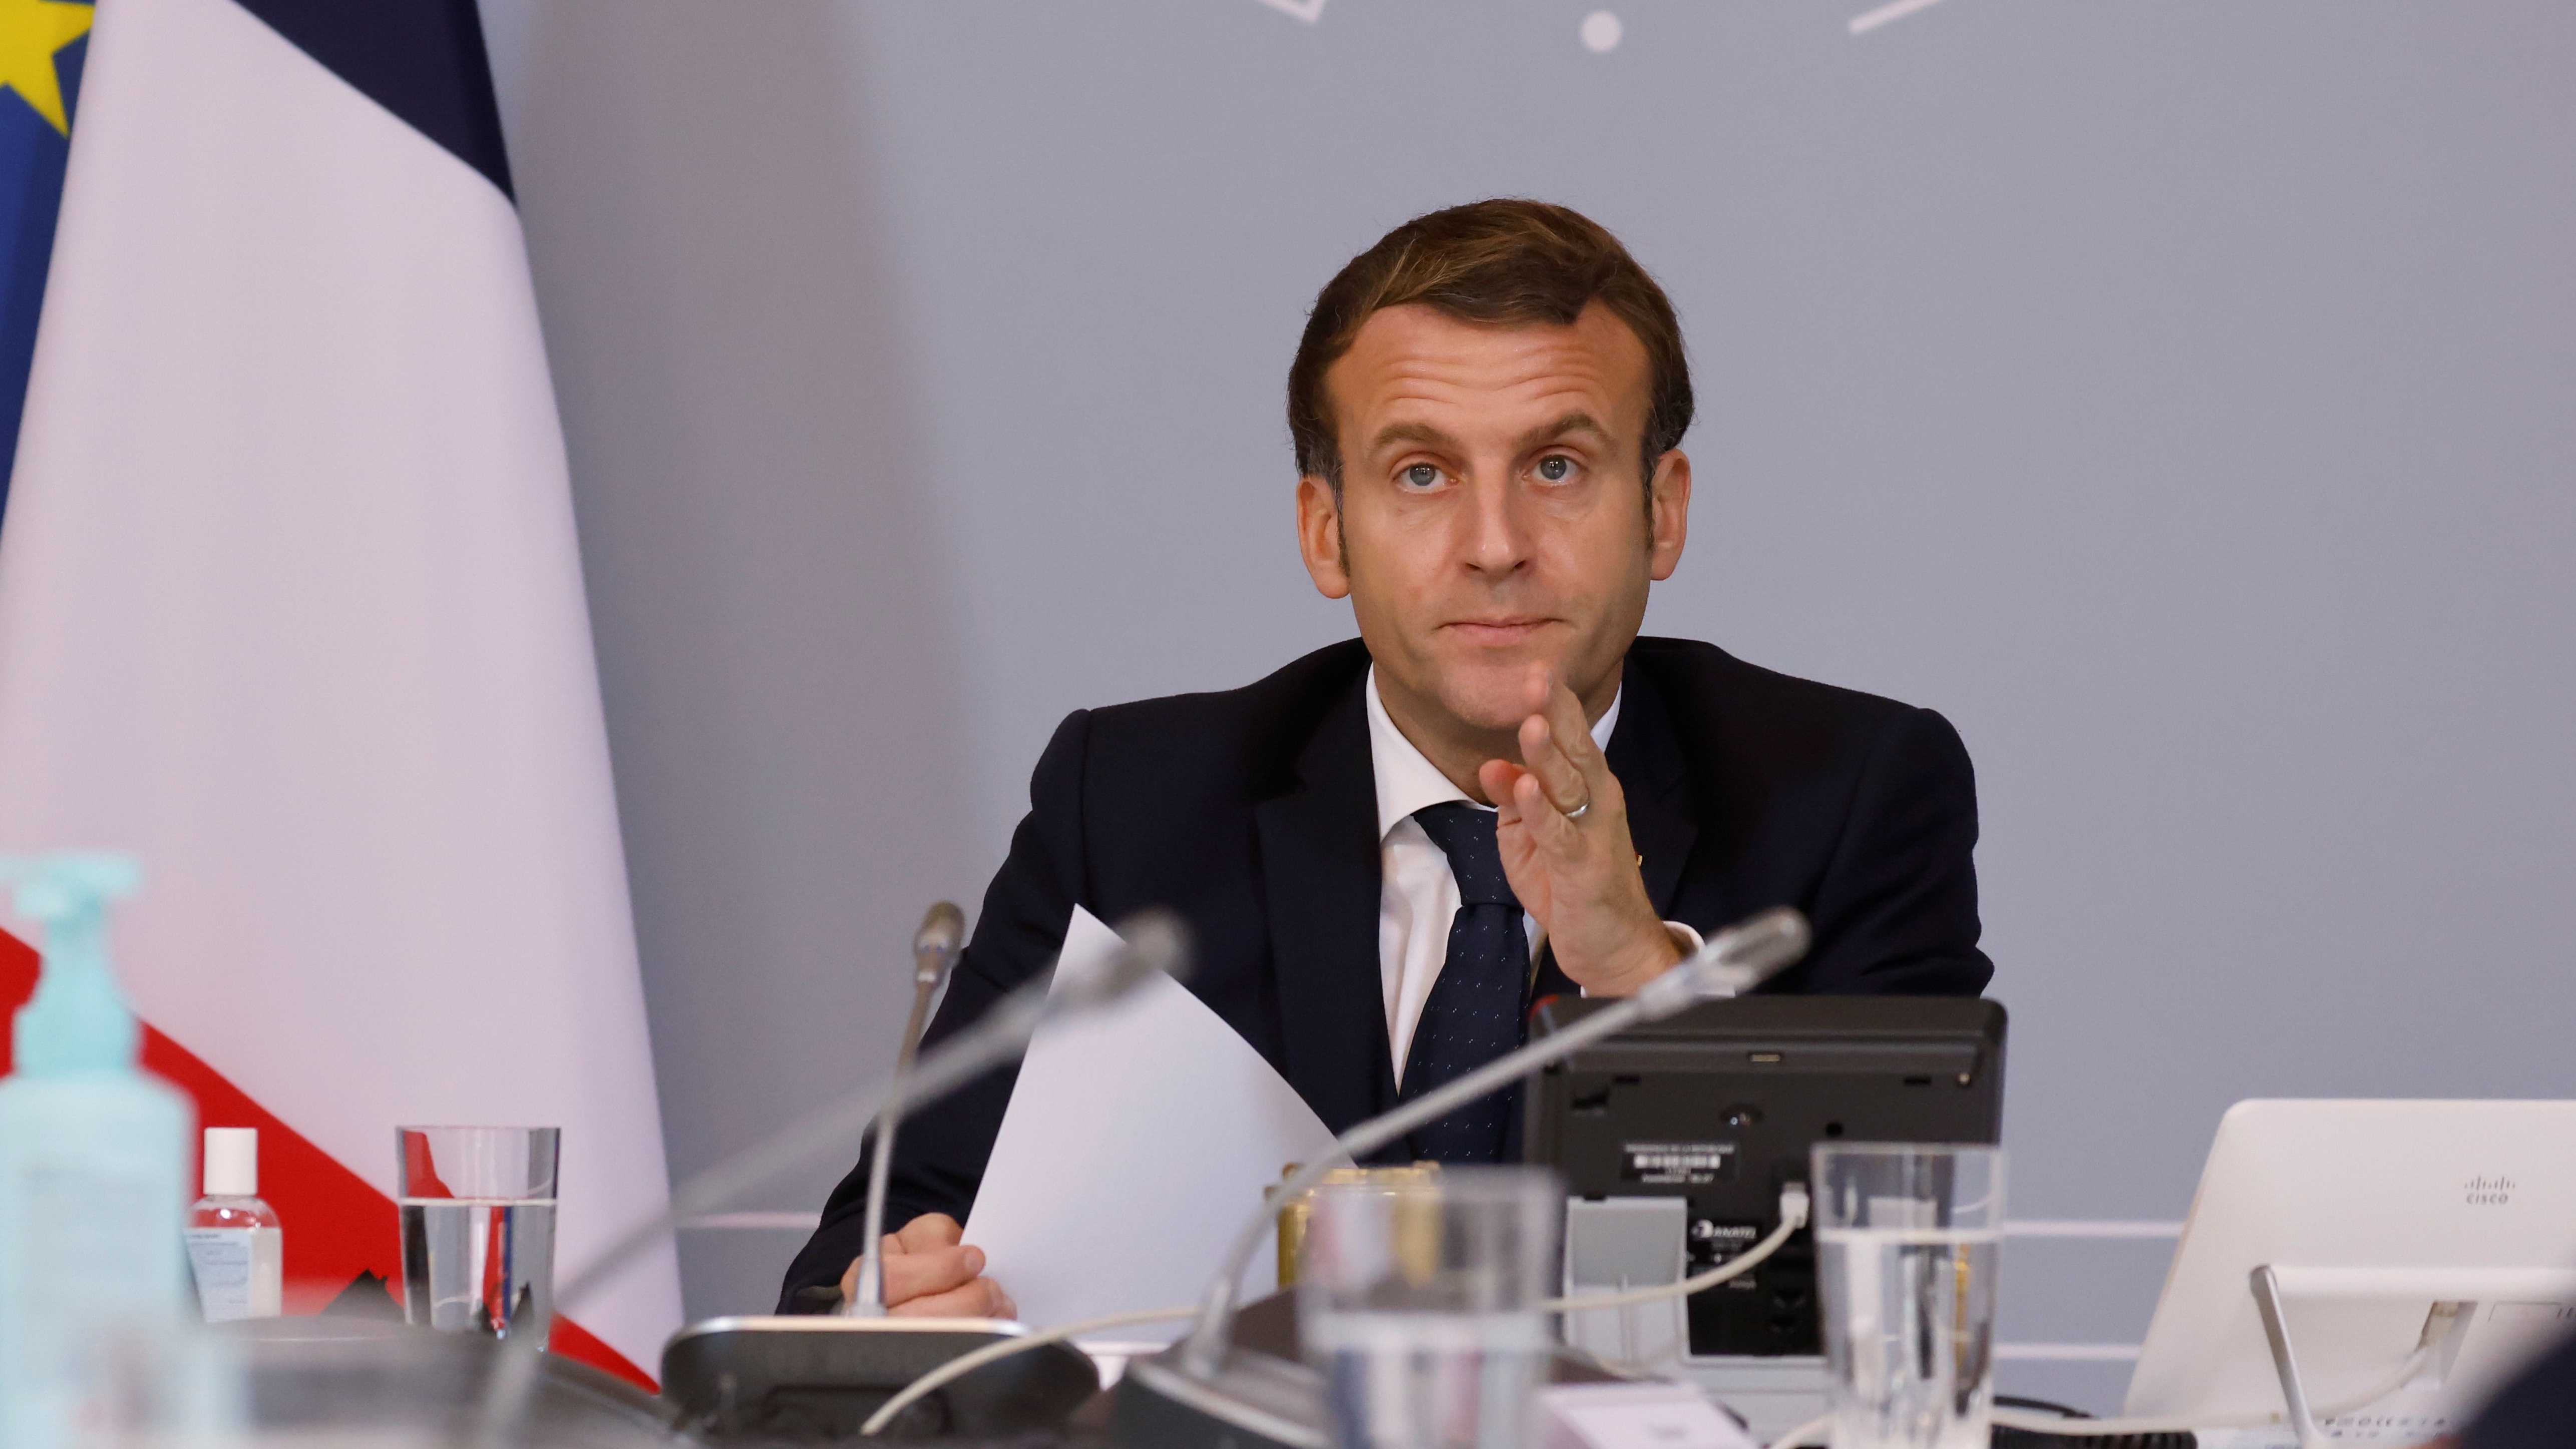 Emmanuel Macron speaks during a videoconference